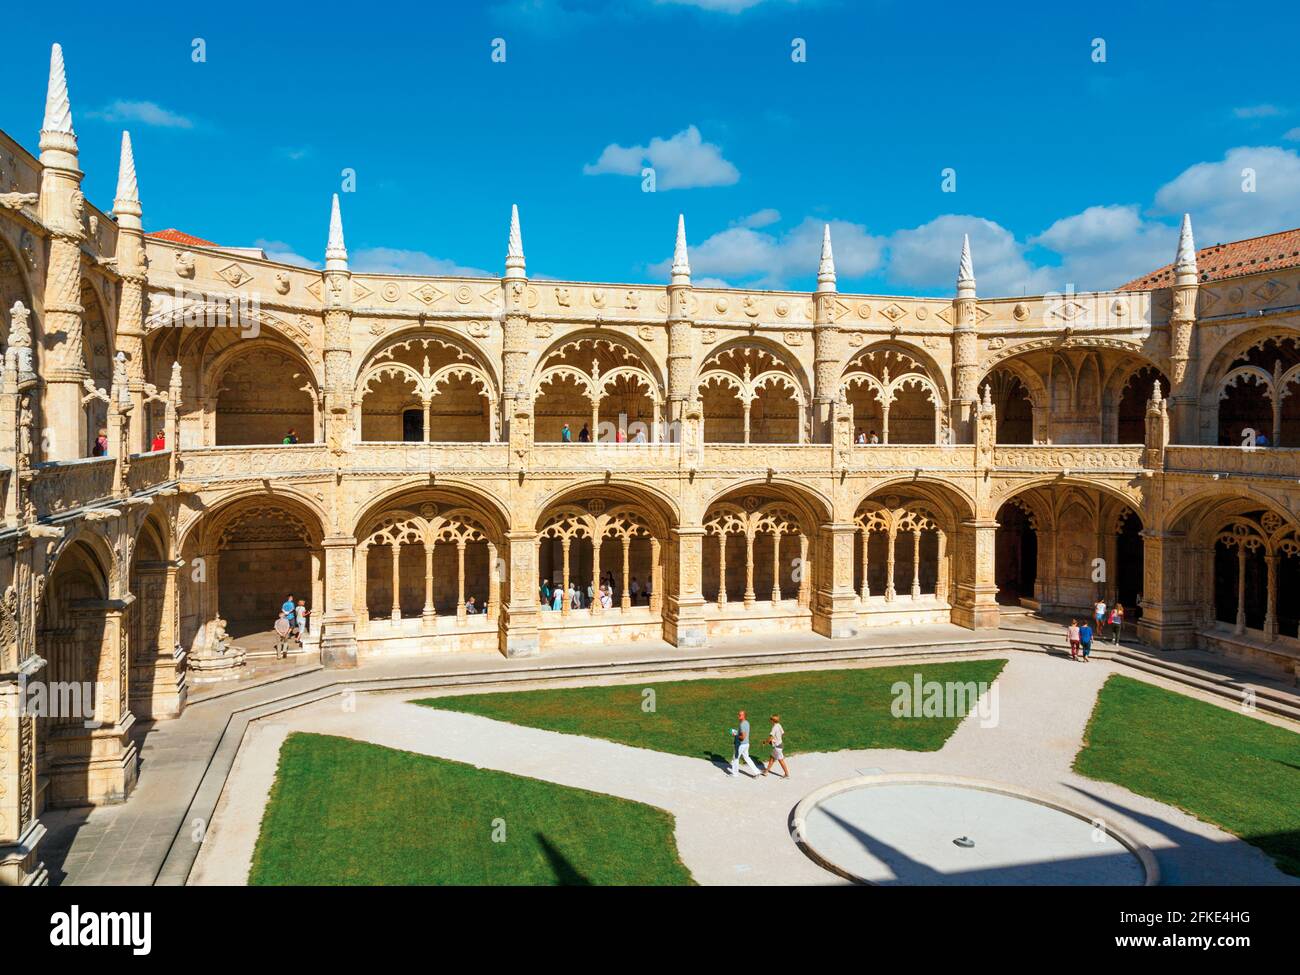 Lisbona, Portogallo. Il chiostro e il cortile del Mosteiro dos Jeronimos, o il Monastero degli Ieronimiti. Il monastero è considerato un trio Foto Stock